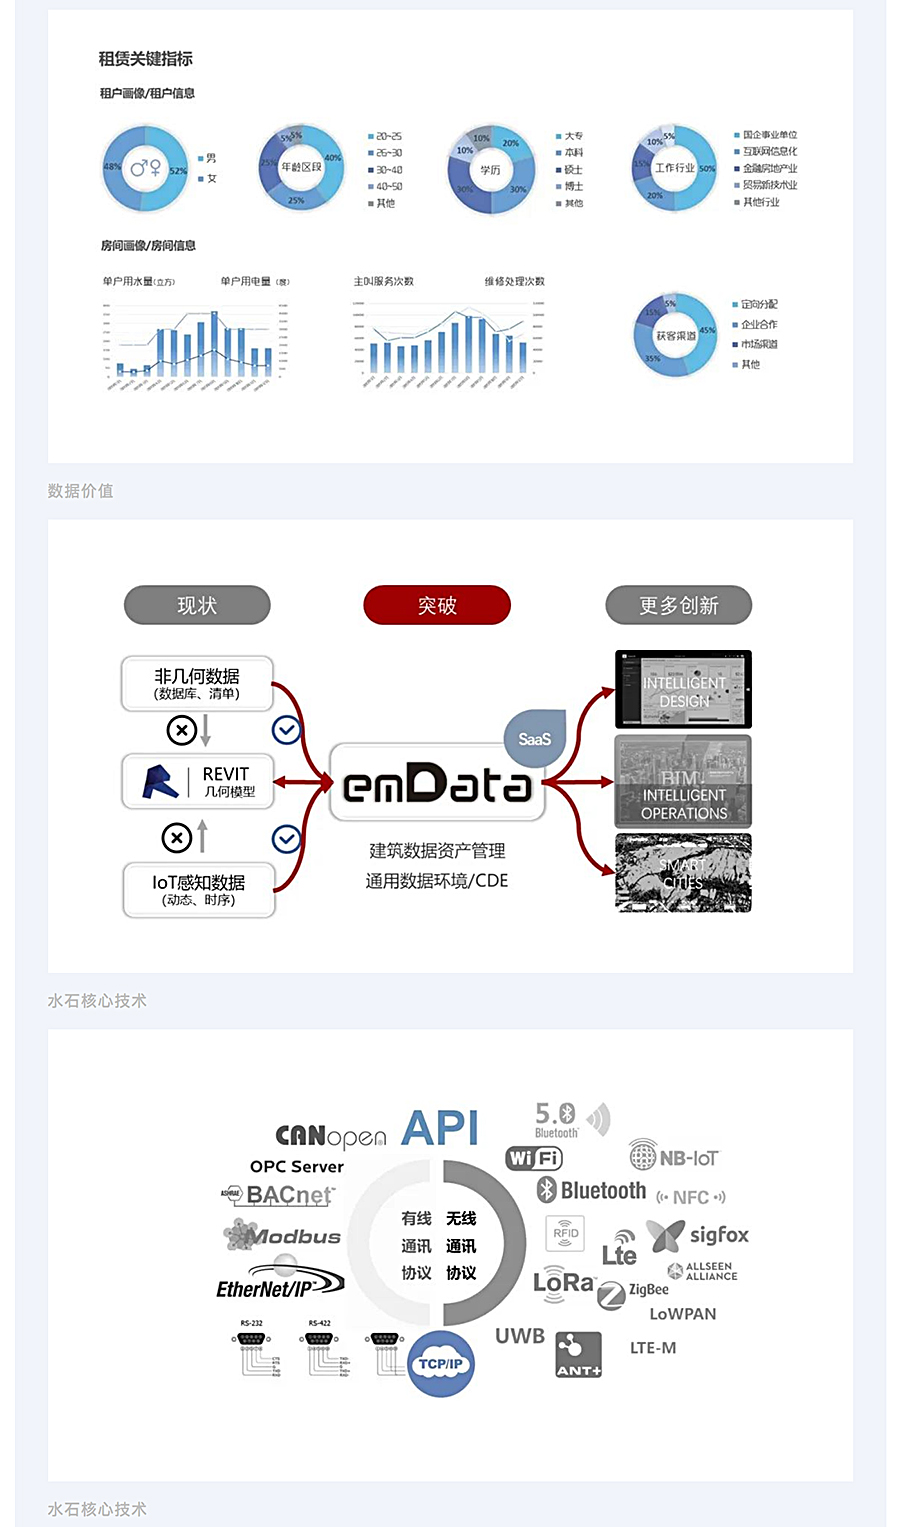 千万级数据贯通-_-上海城投湾谷租赁住宅项目BIM运维研究与实施_0003_图层-4.jpg